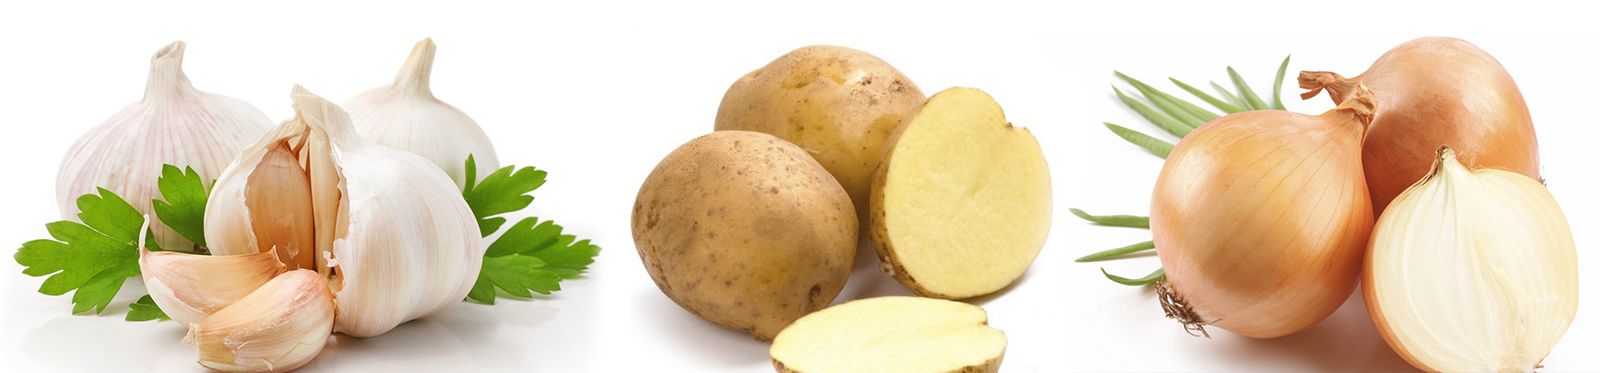 Almacén de ​Patatas Miguelón​ patatas y cebollas